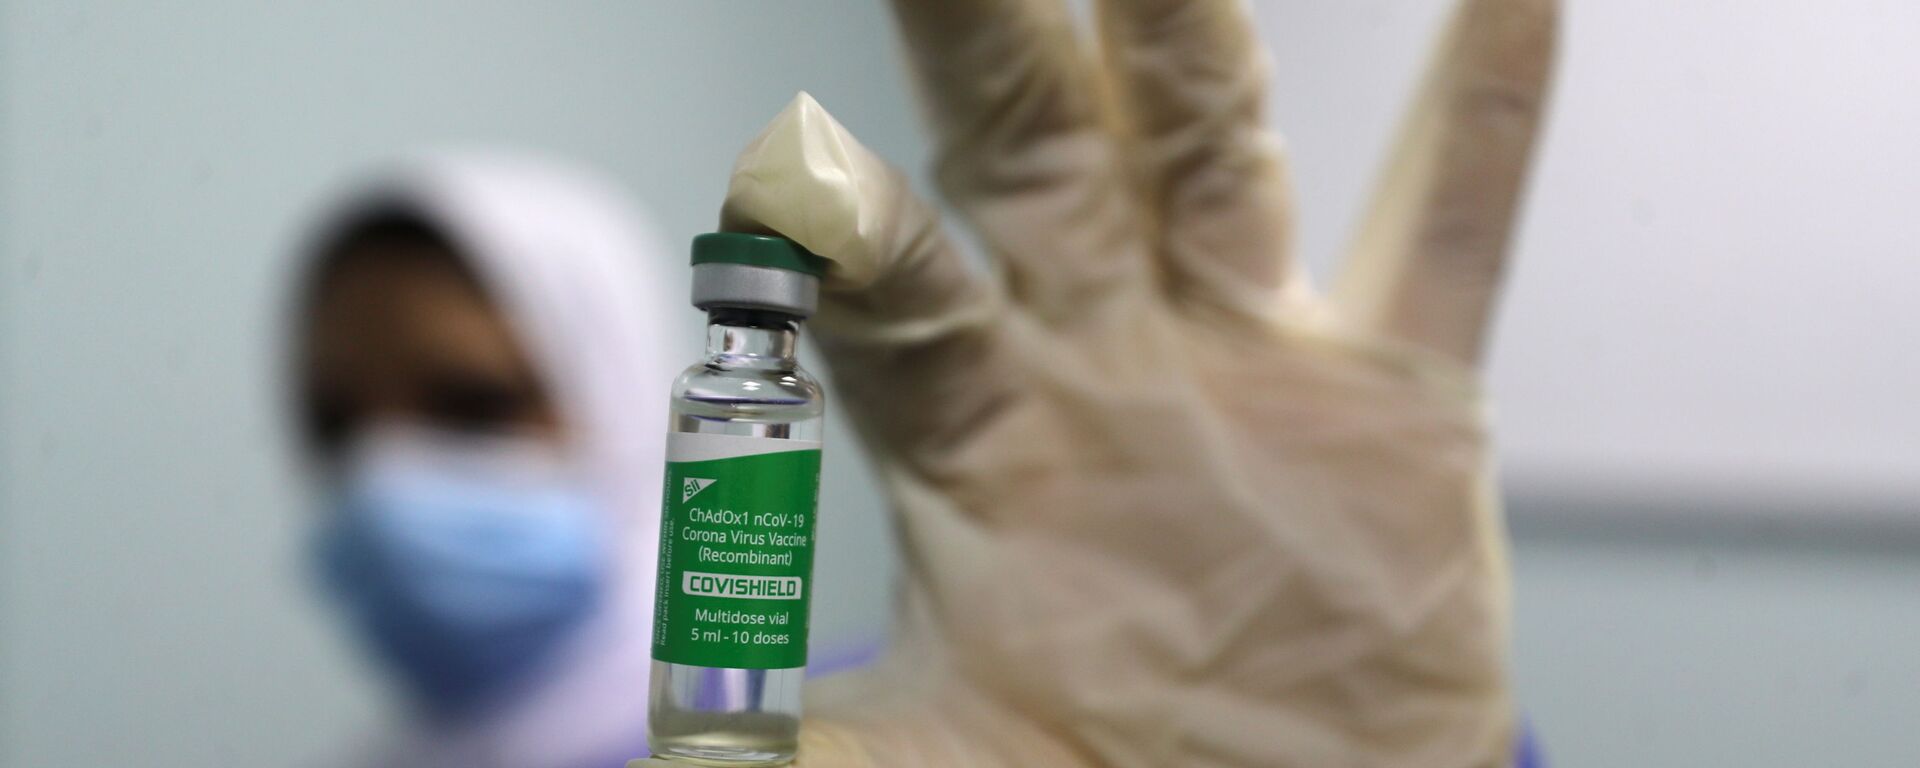 بدء تطعيم واسع النطاق في مصر ضد فيروس كورونا (كوفيد-19)، القاهرة، 4 مارس 2021 - سبوتنيك عربي, 1920, 19.05.2021